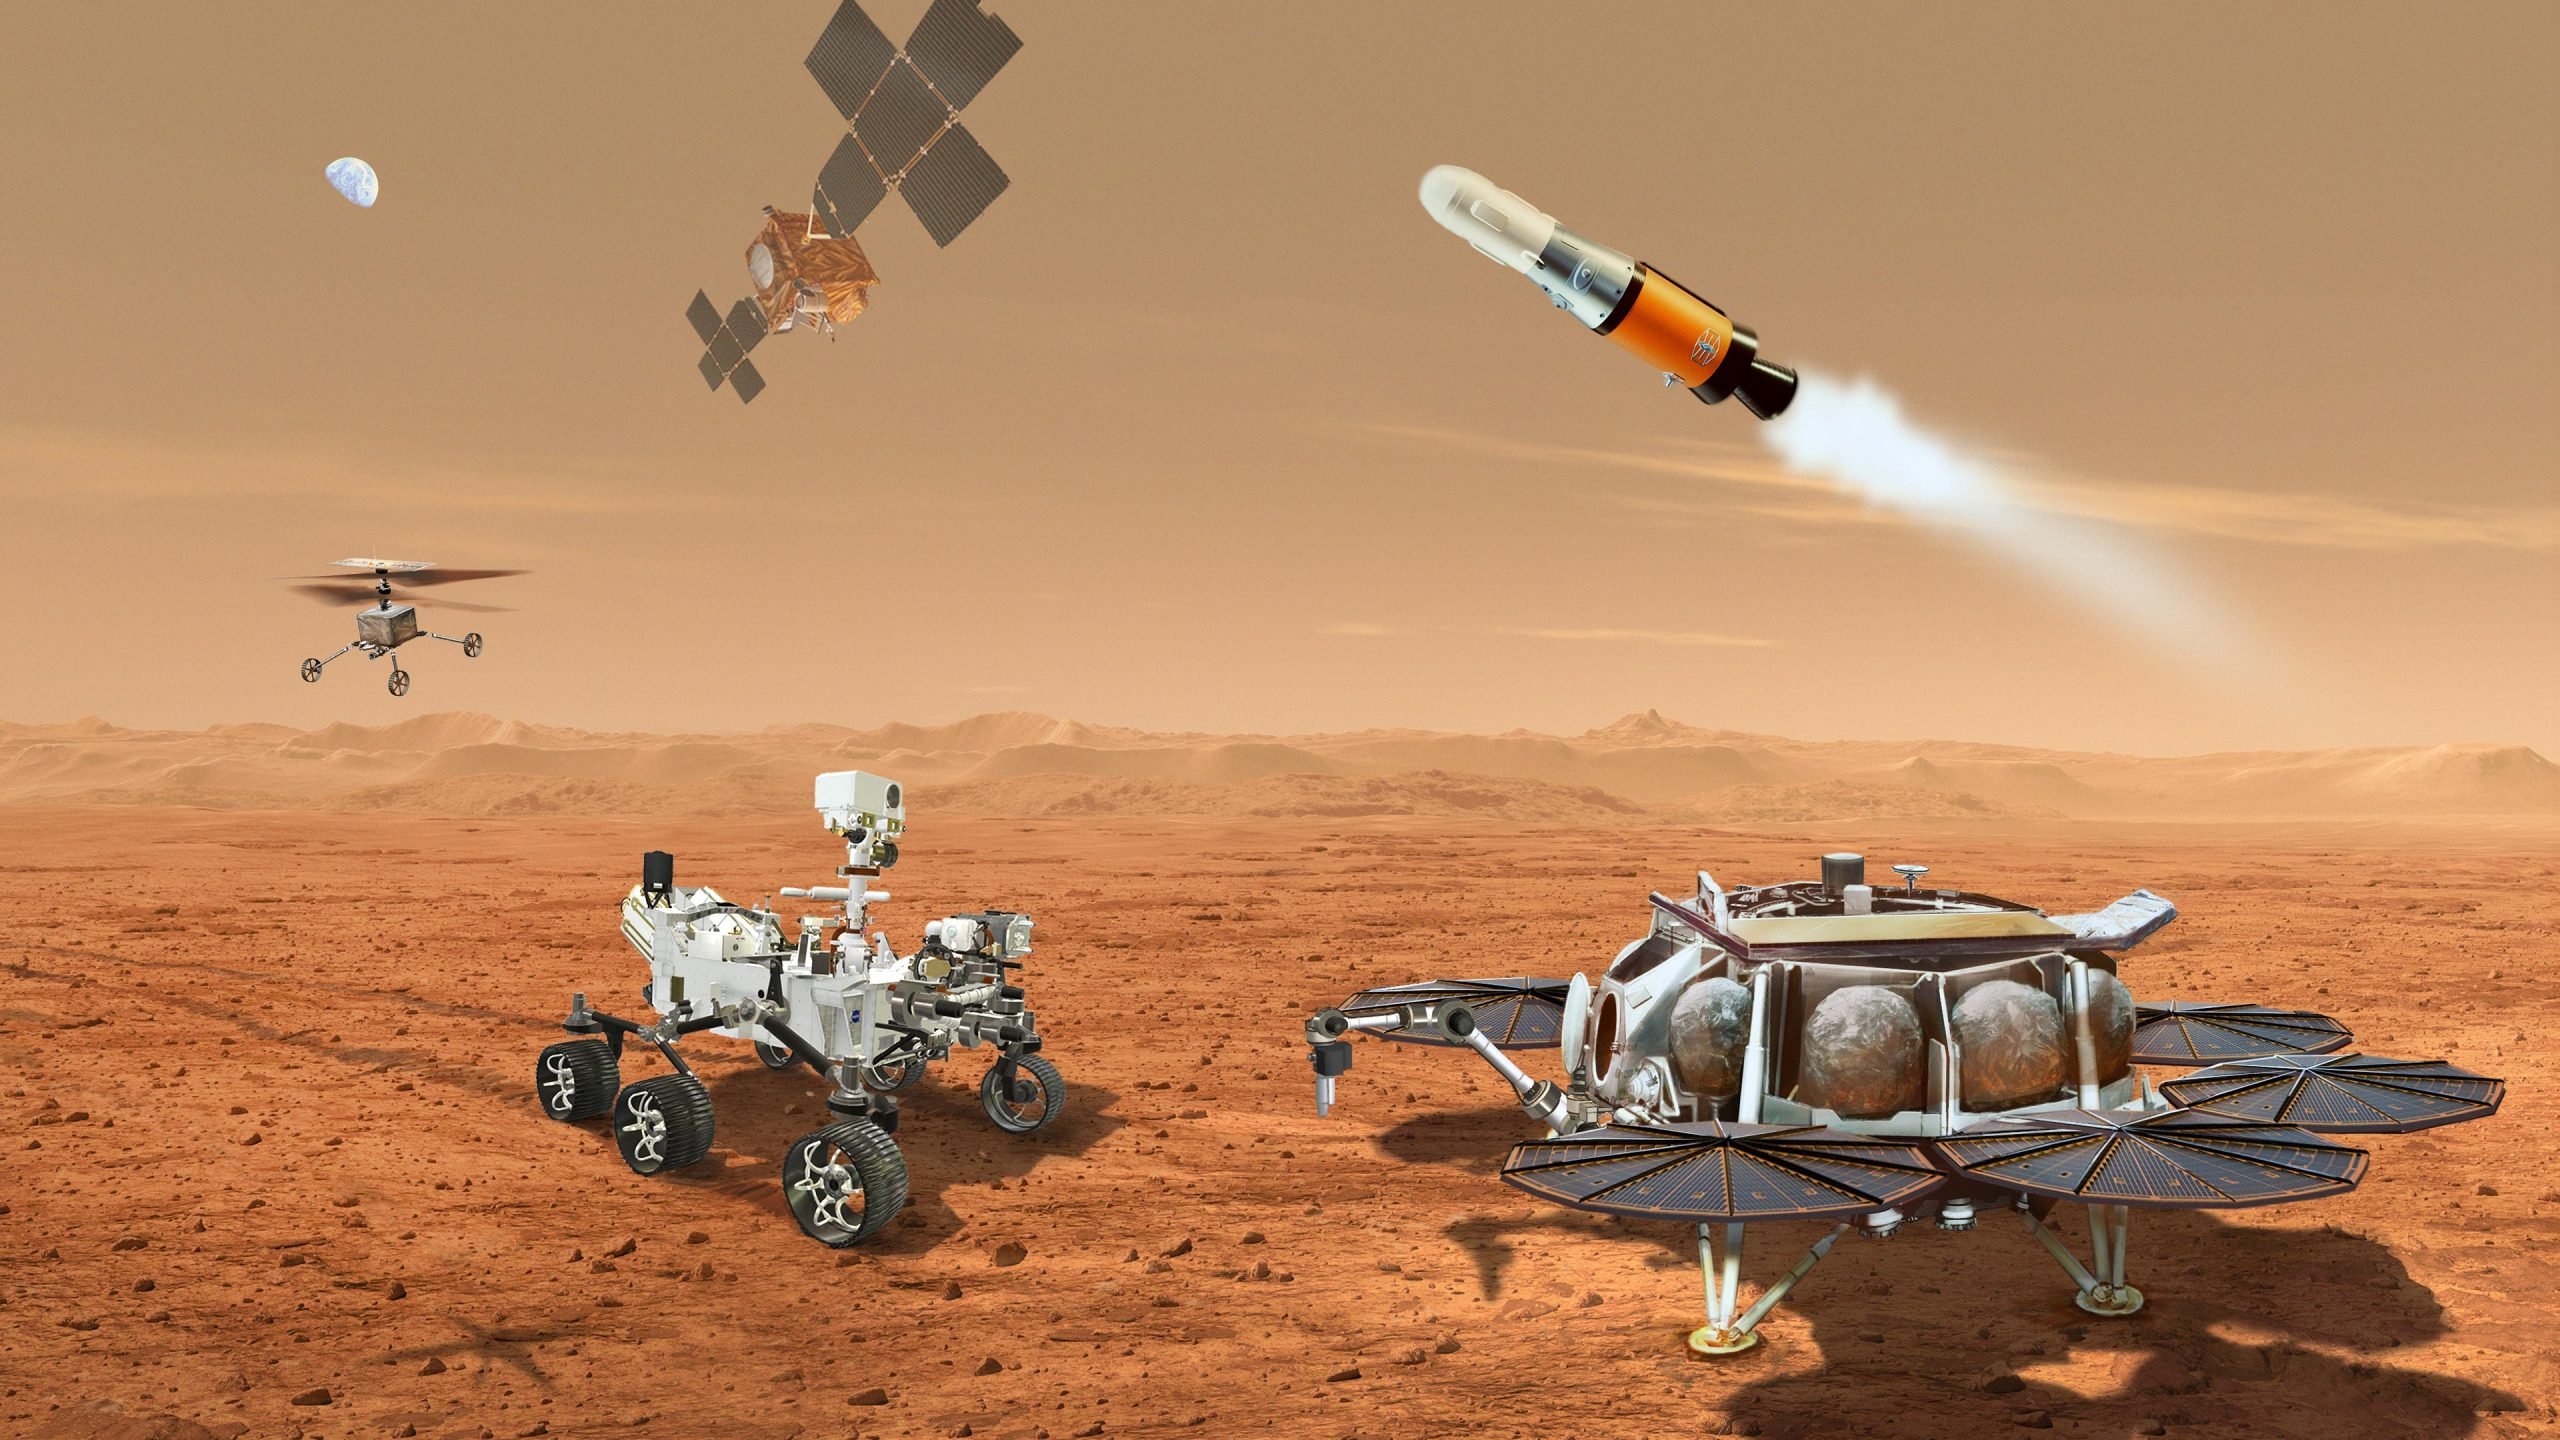 Multiple-Robots-NASA-Mars-Sample-Return-Mission-scaled.jpg